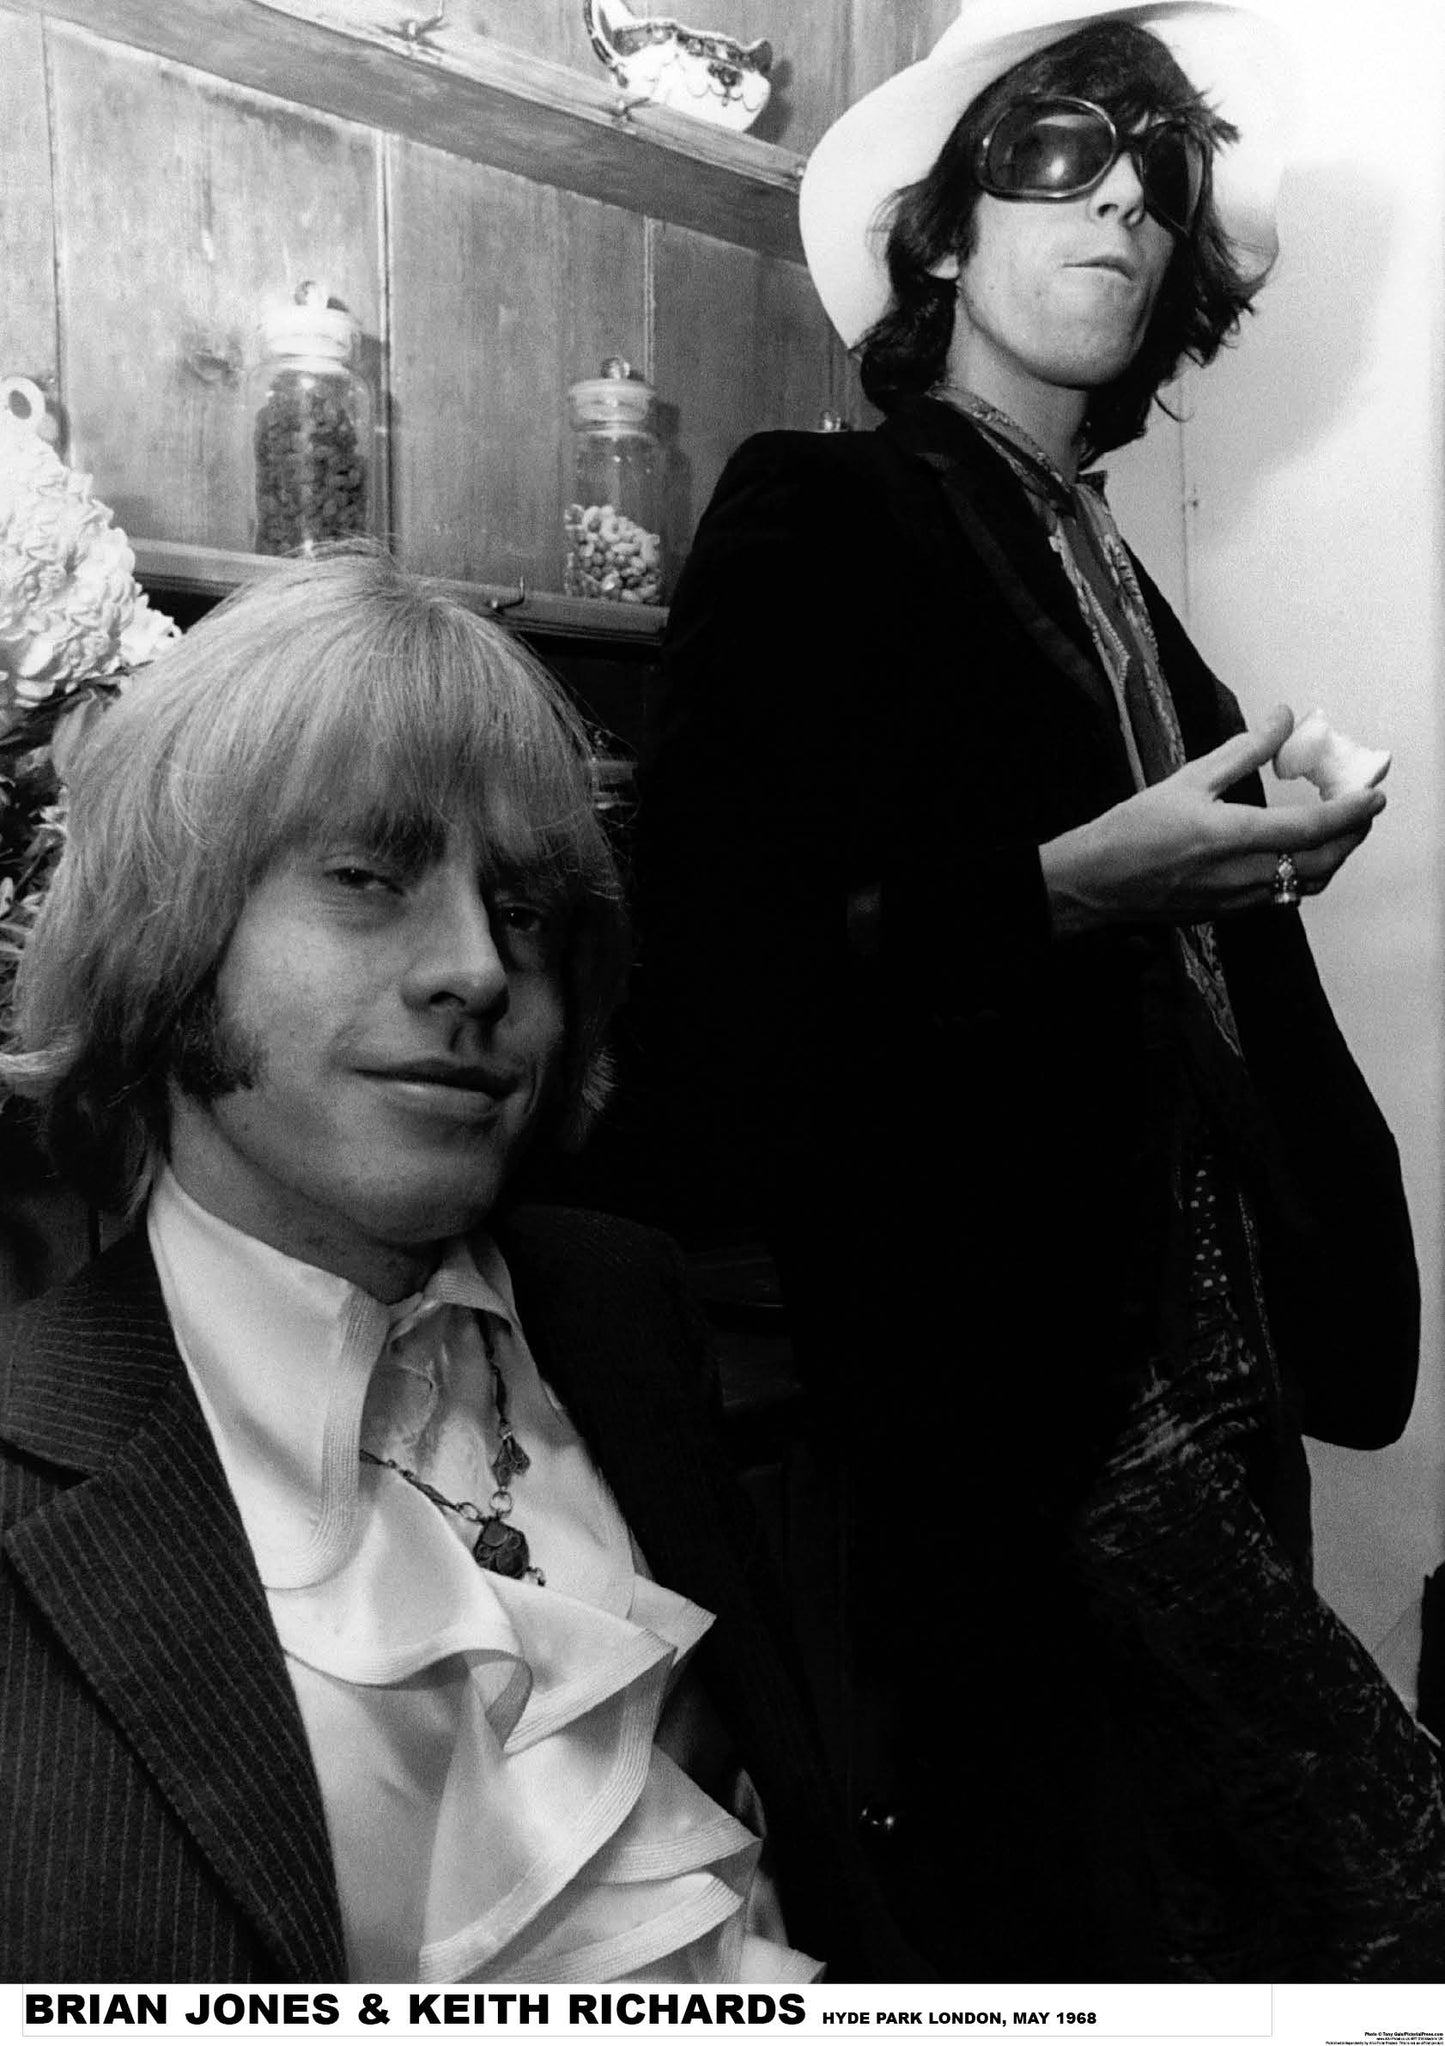 Rolling Stones Jones & Richards Poster